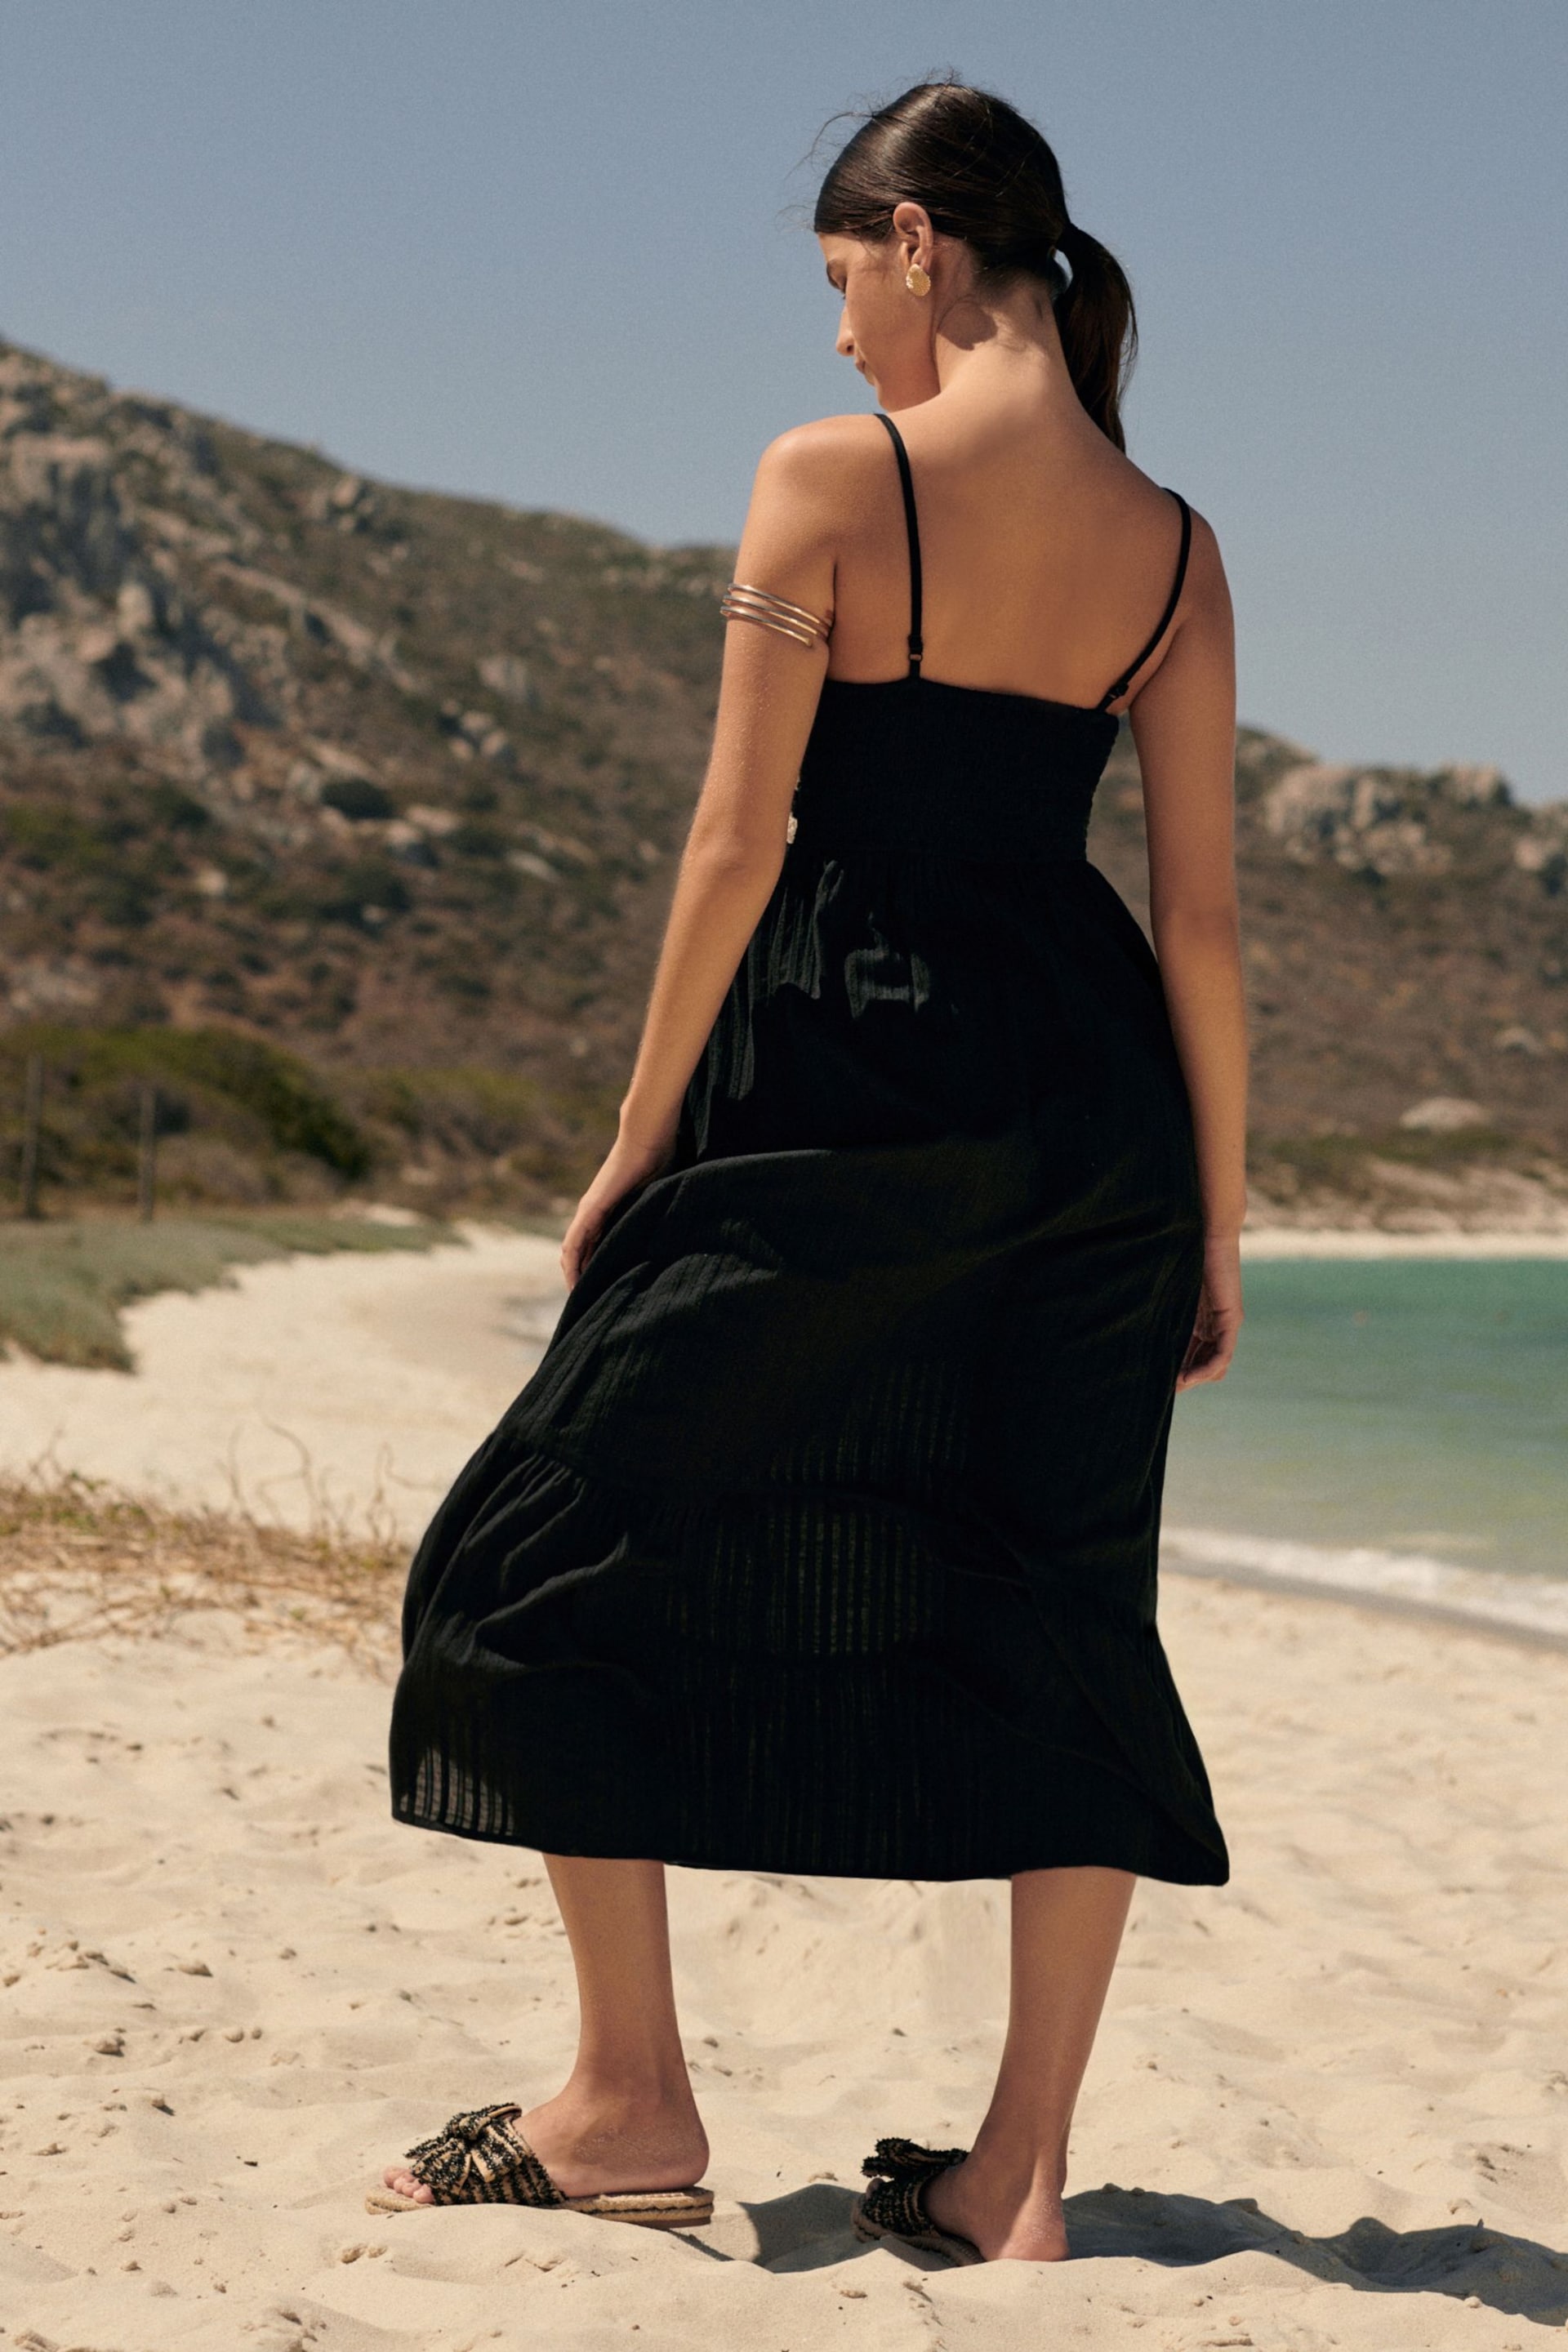 Black/White Crochet Maxi Summer Dress - Image 4 of 9